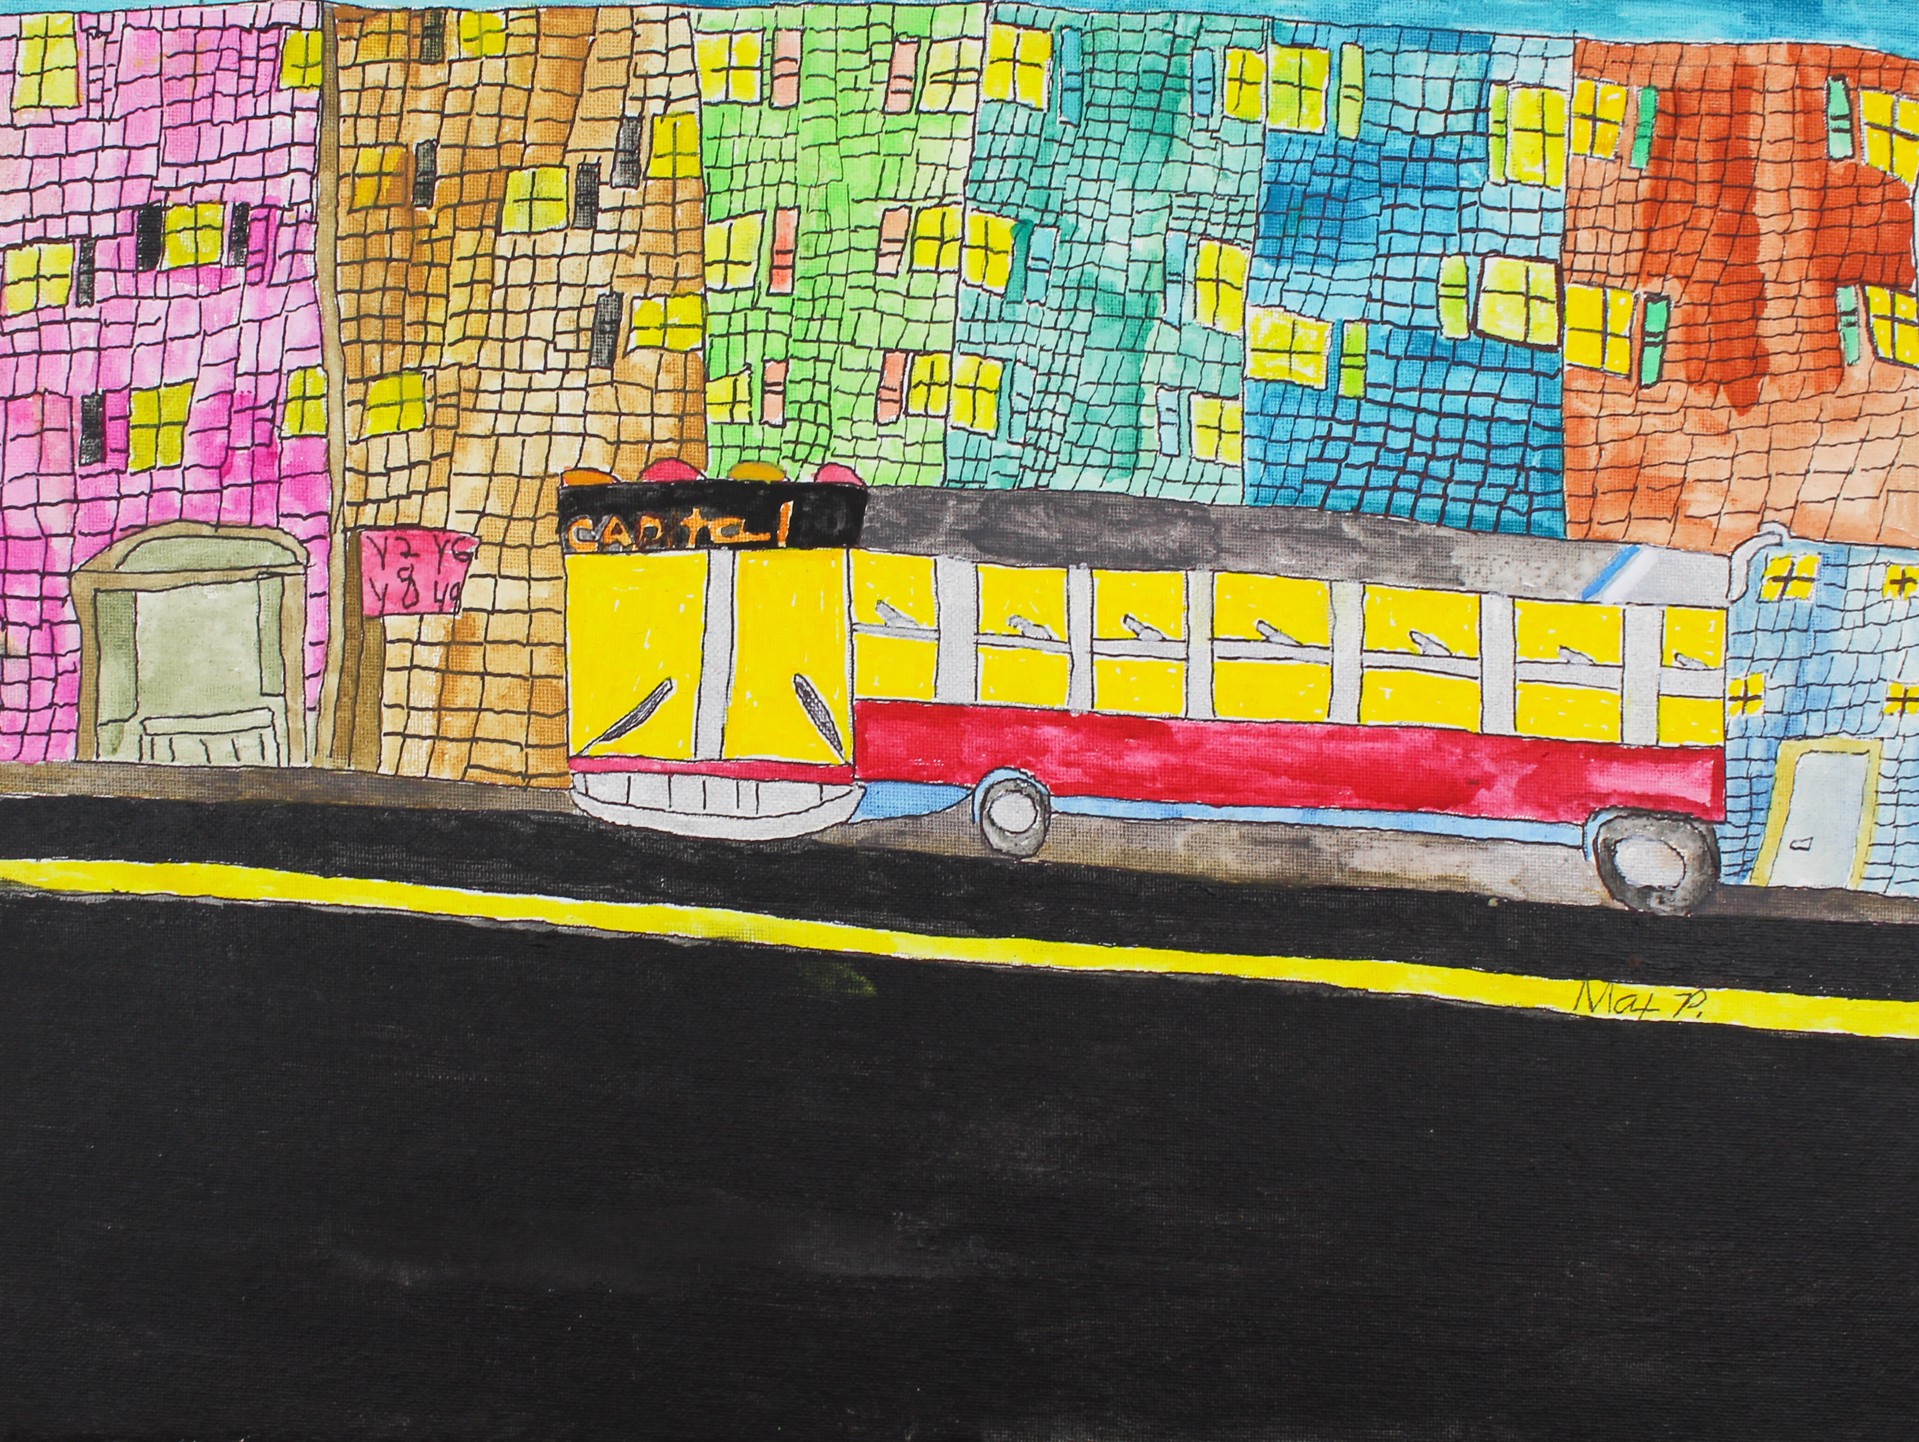 Bus into the Big City by Max Poznerzon